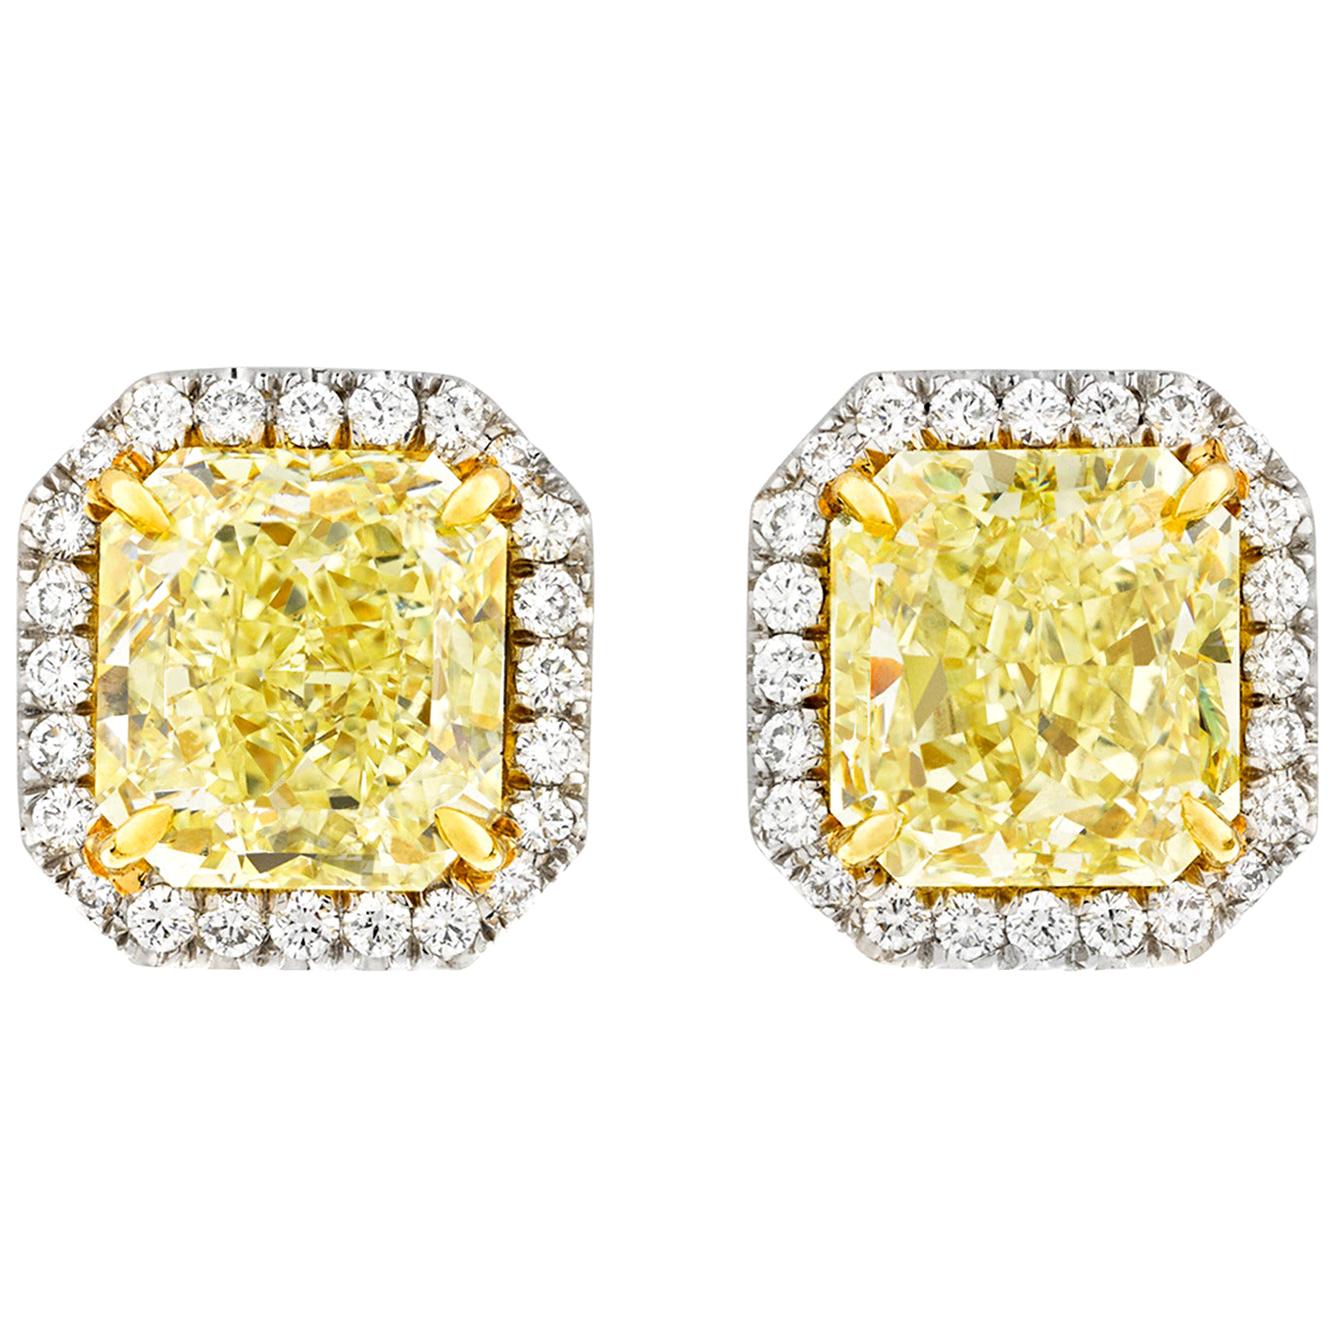 Fancy Yellow Diamond Earrings, 6.92 Carat